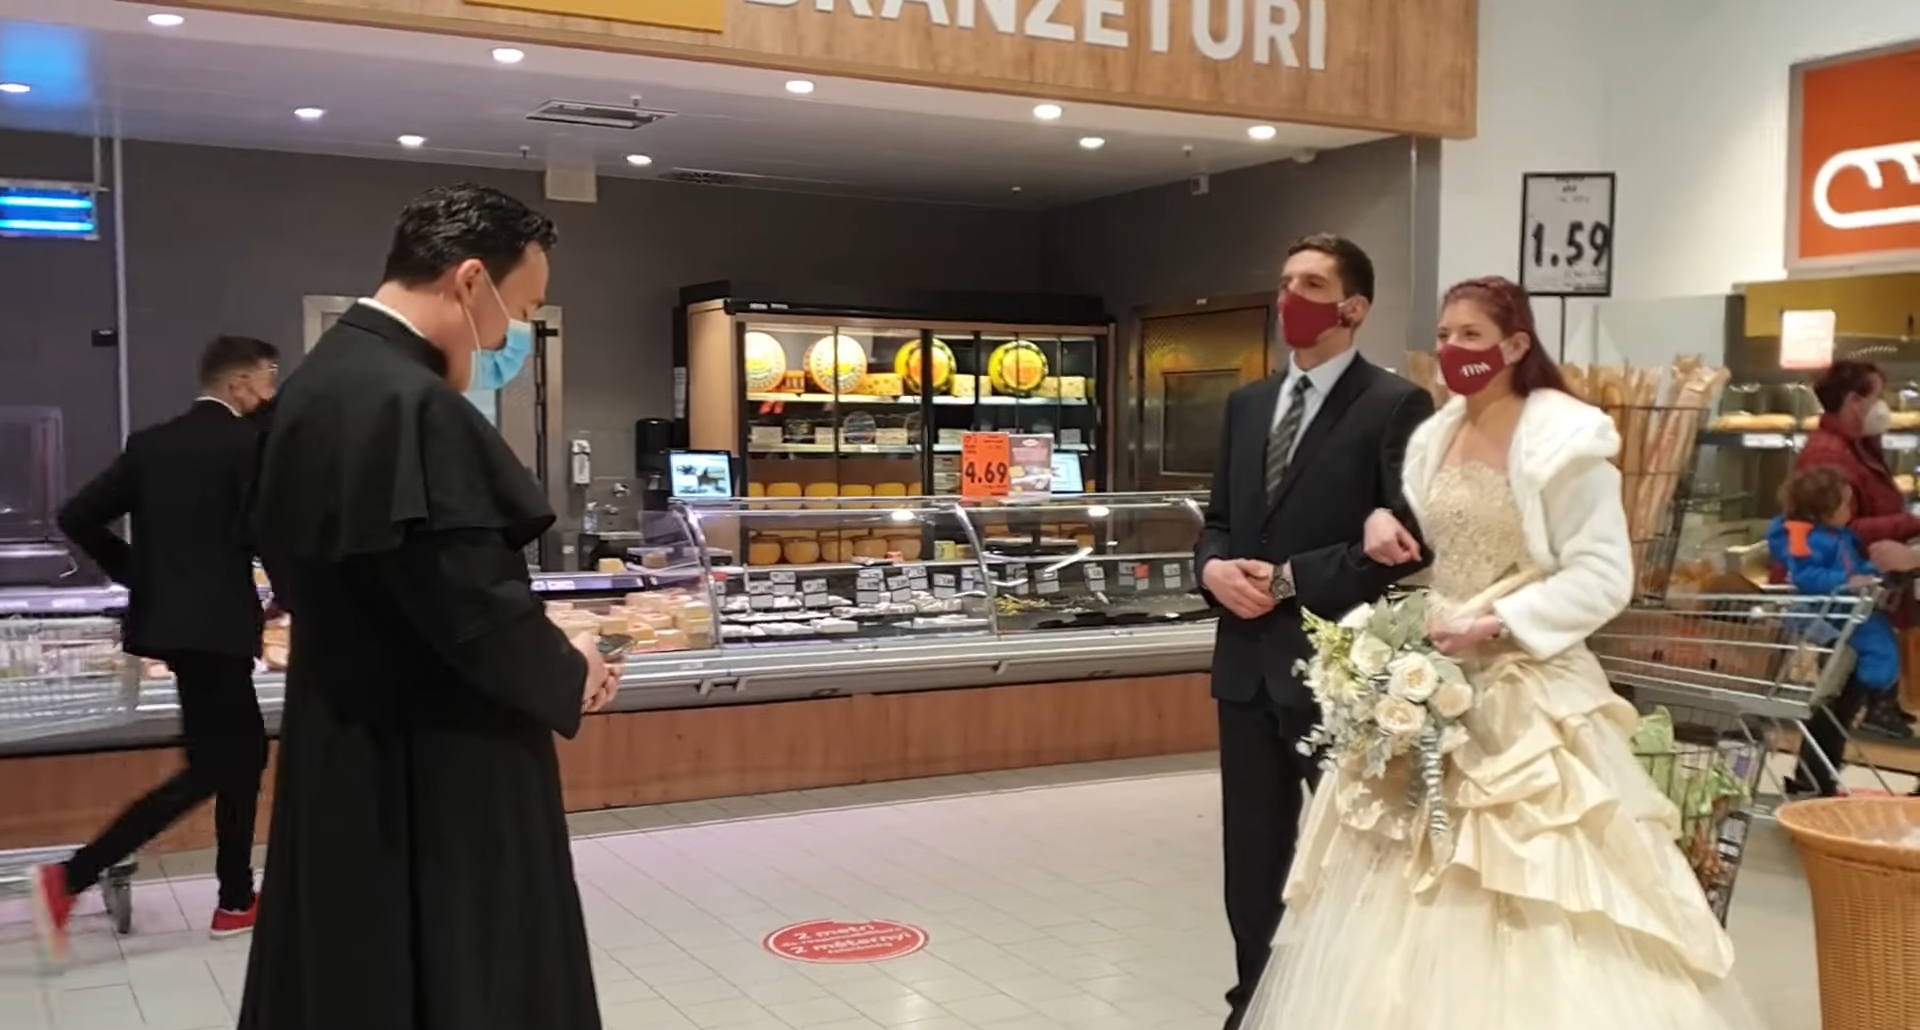 Nuntă înscenată la supermarket, în Sfântu Gheorghe. Protest inedit al organizatorilor de evenimente